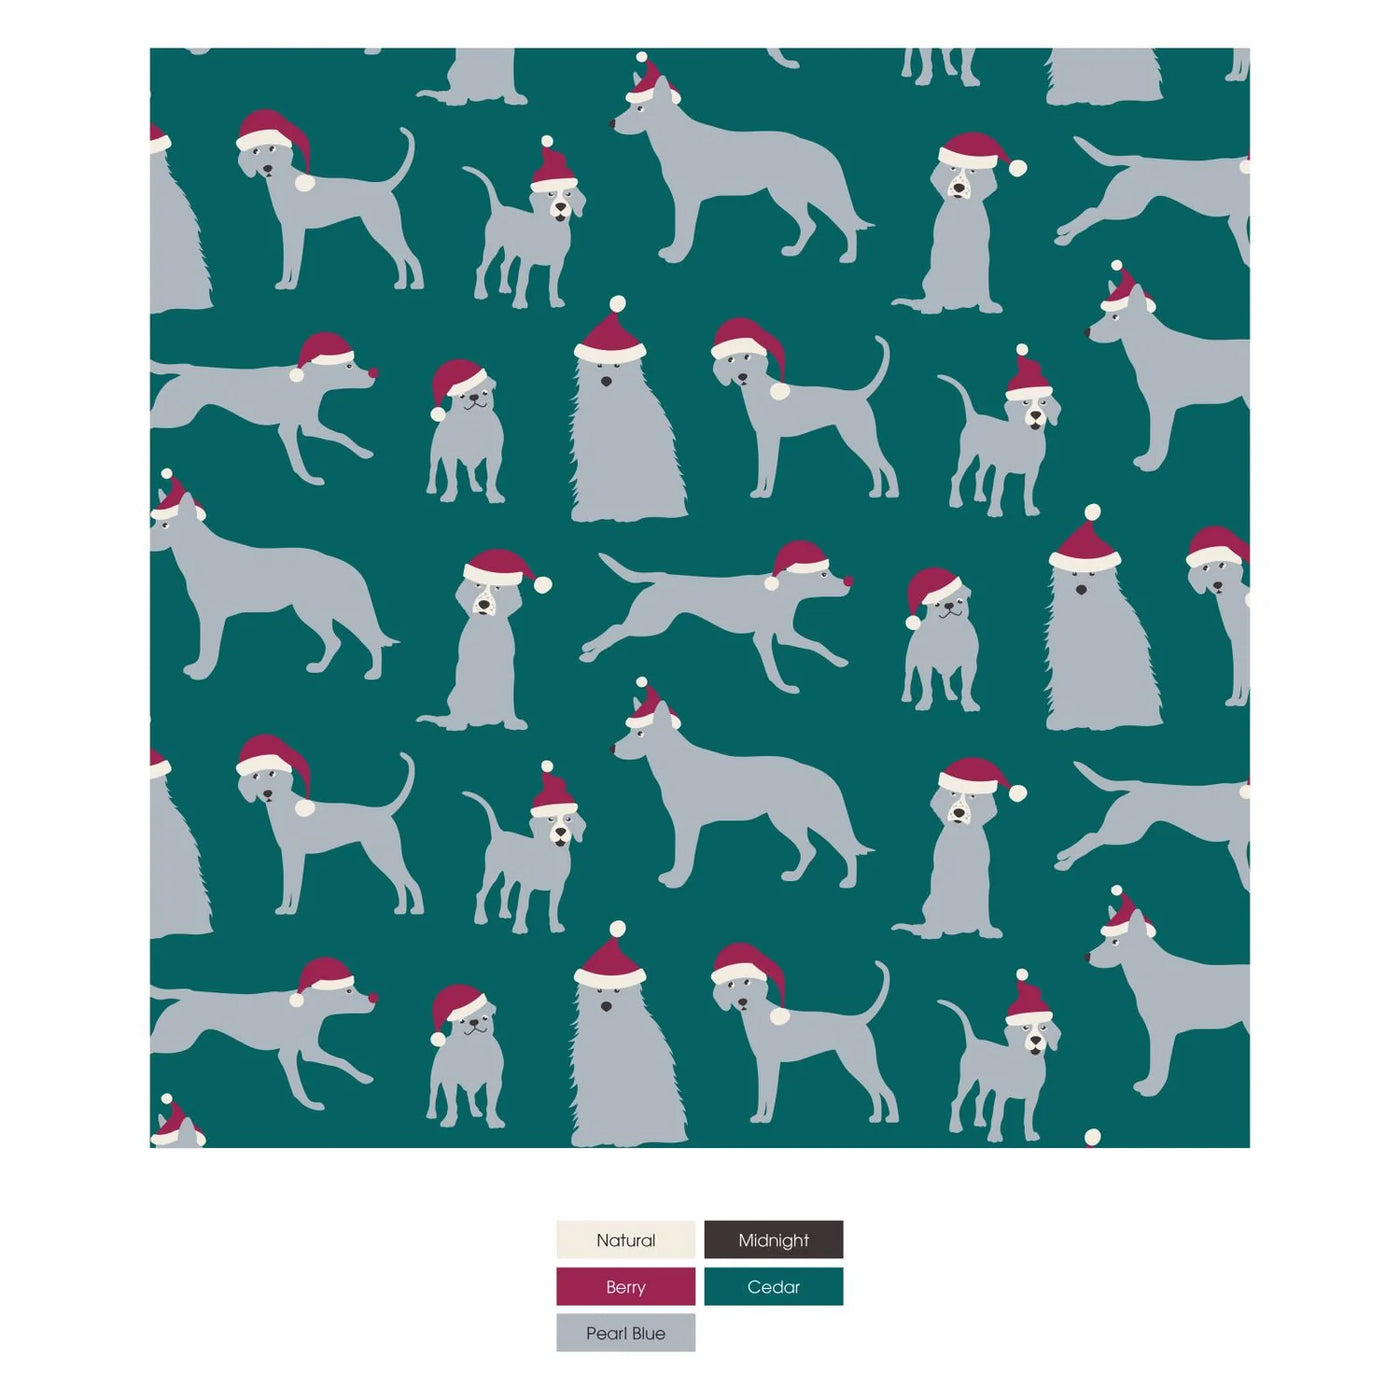 Cedar Santa Dogs Long Sleeve Graphic Tee Pajama Set